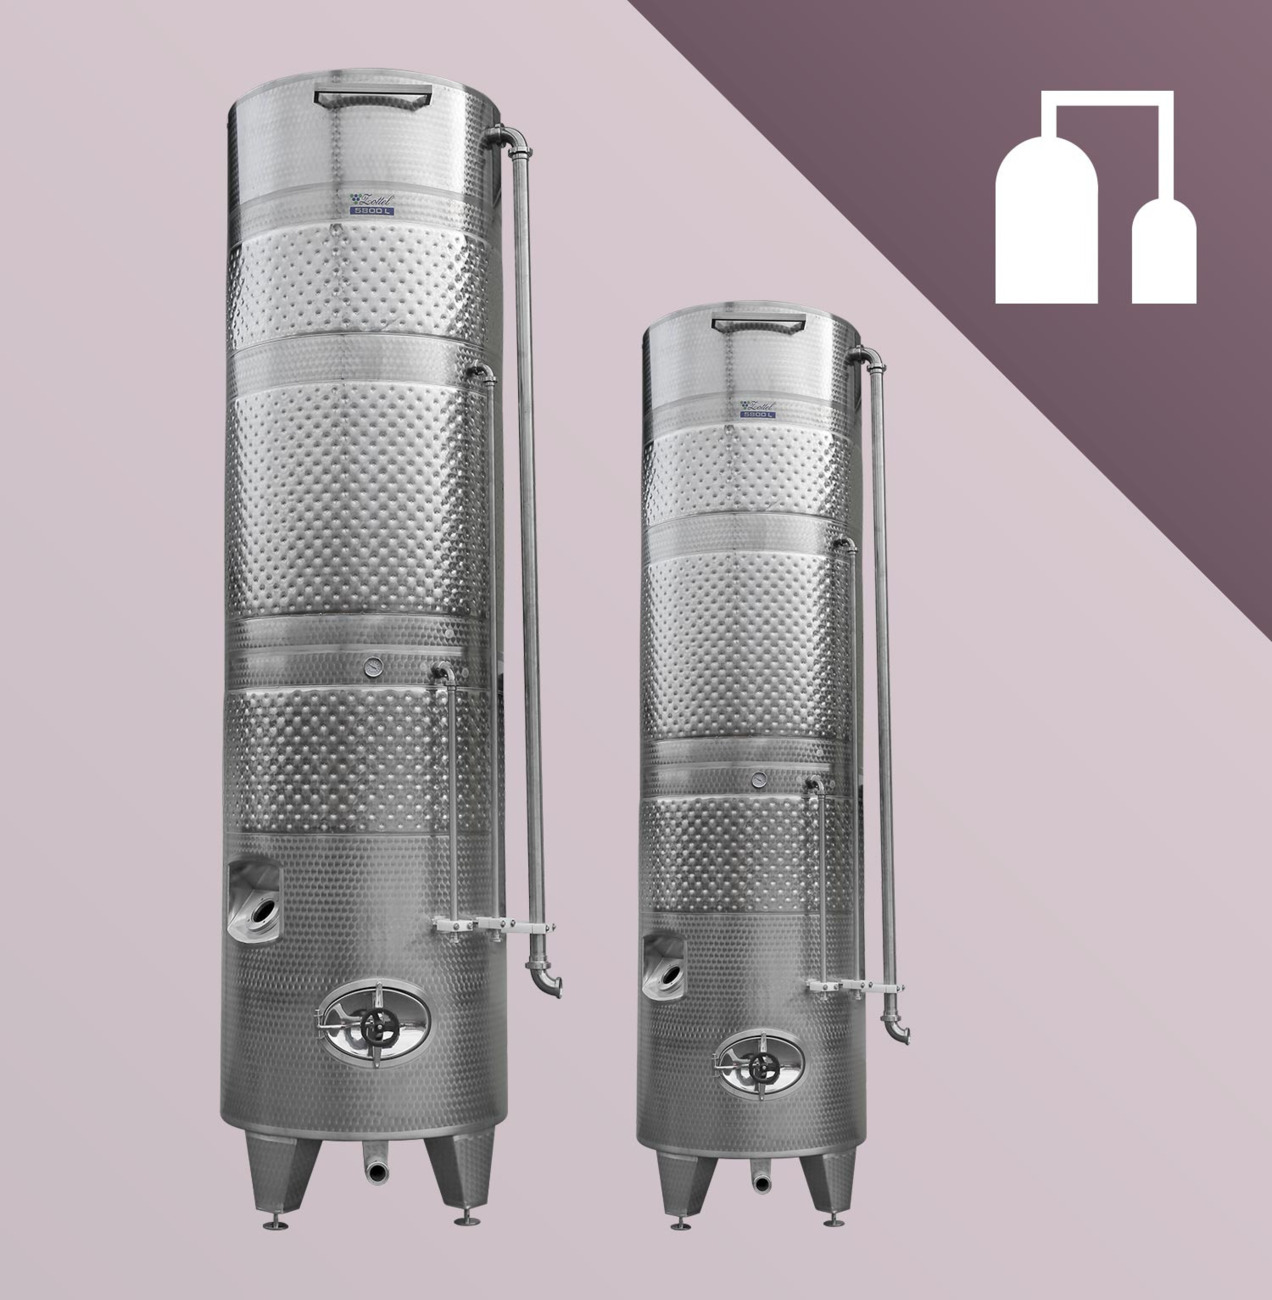 Storage tanks for distilleries